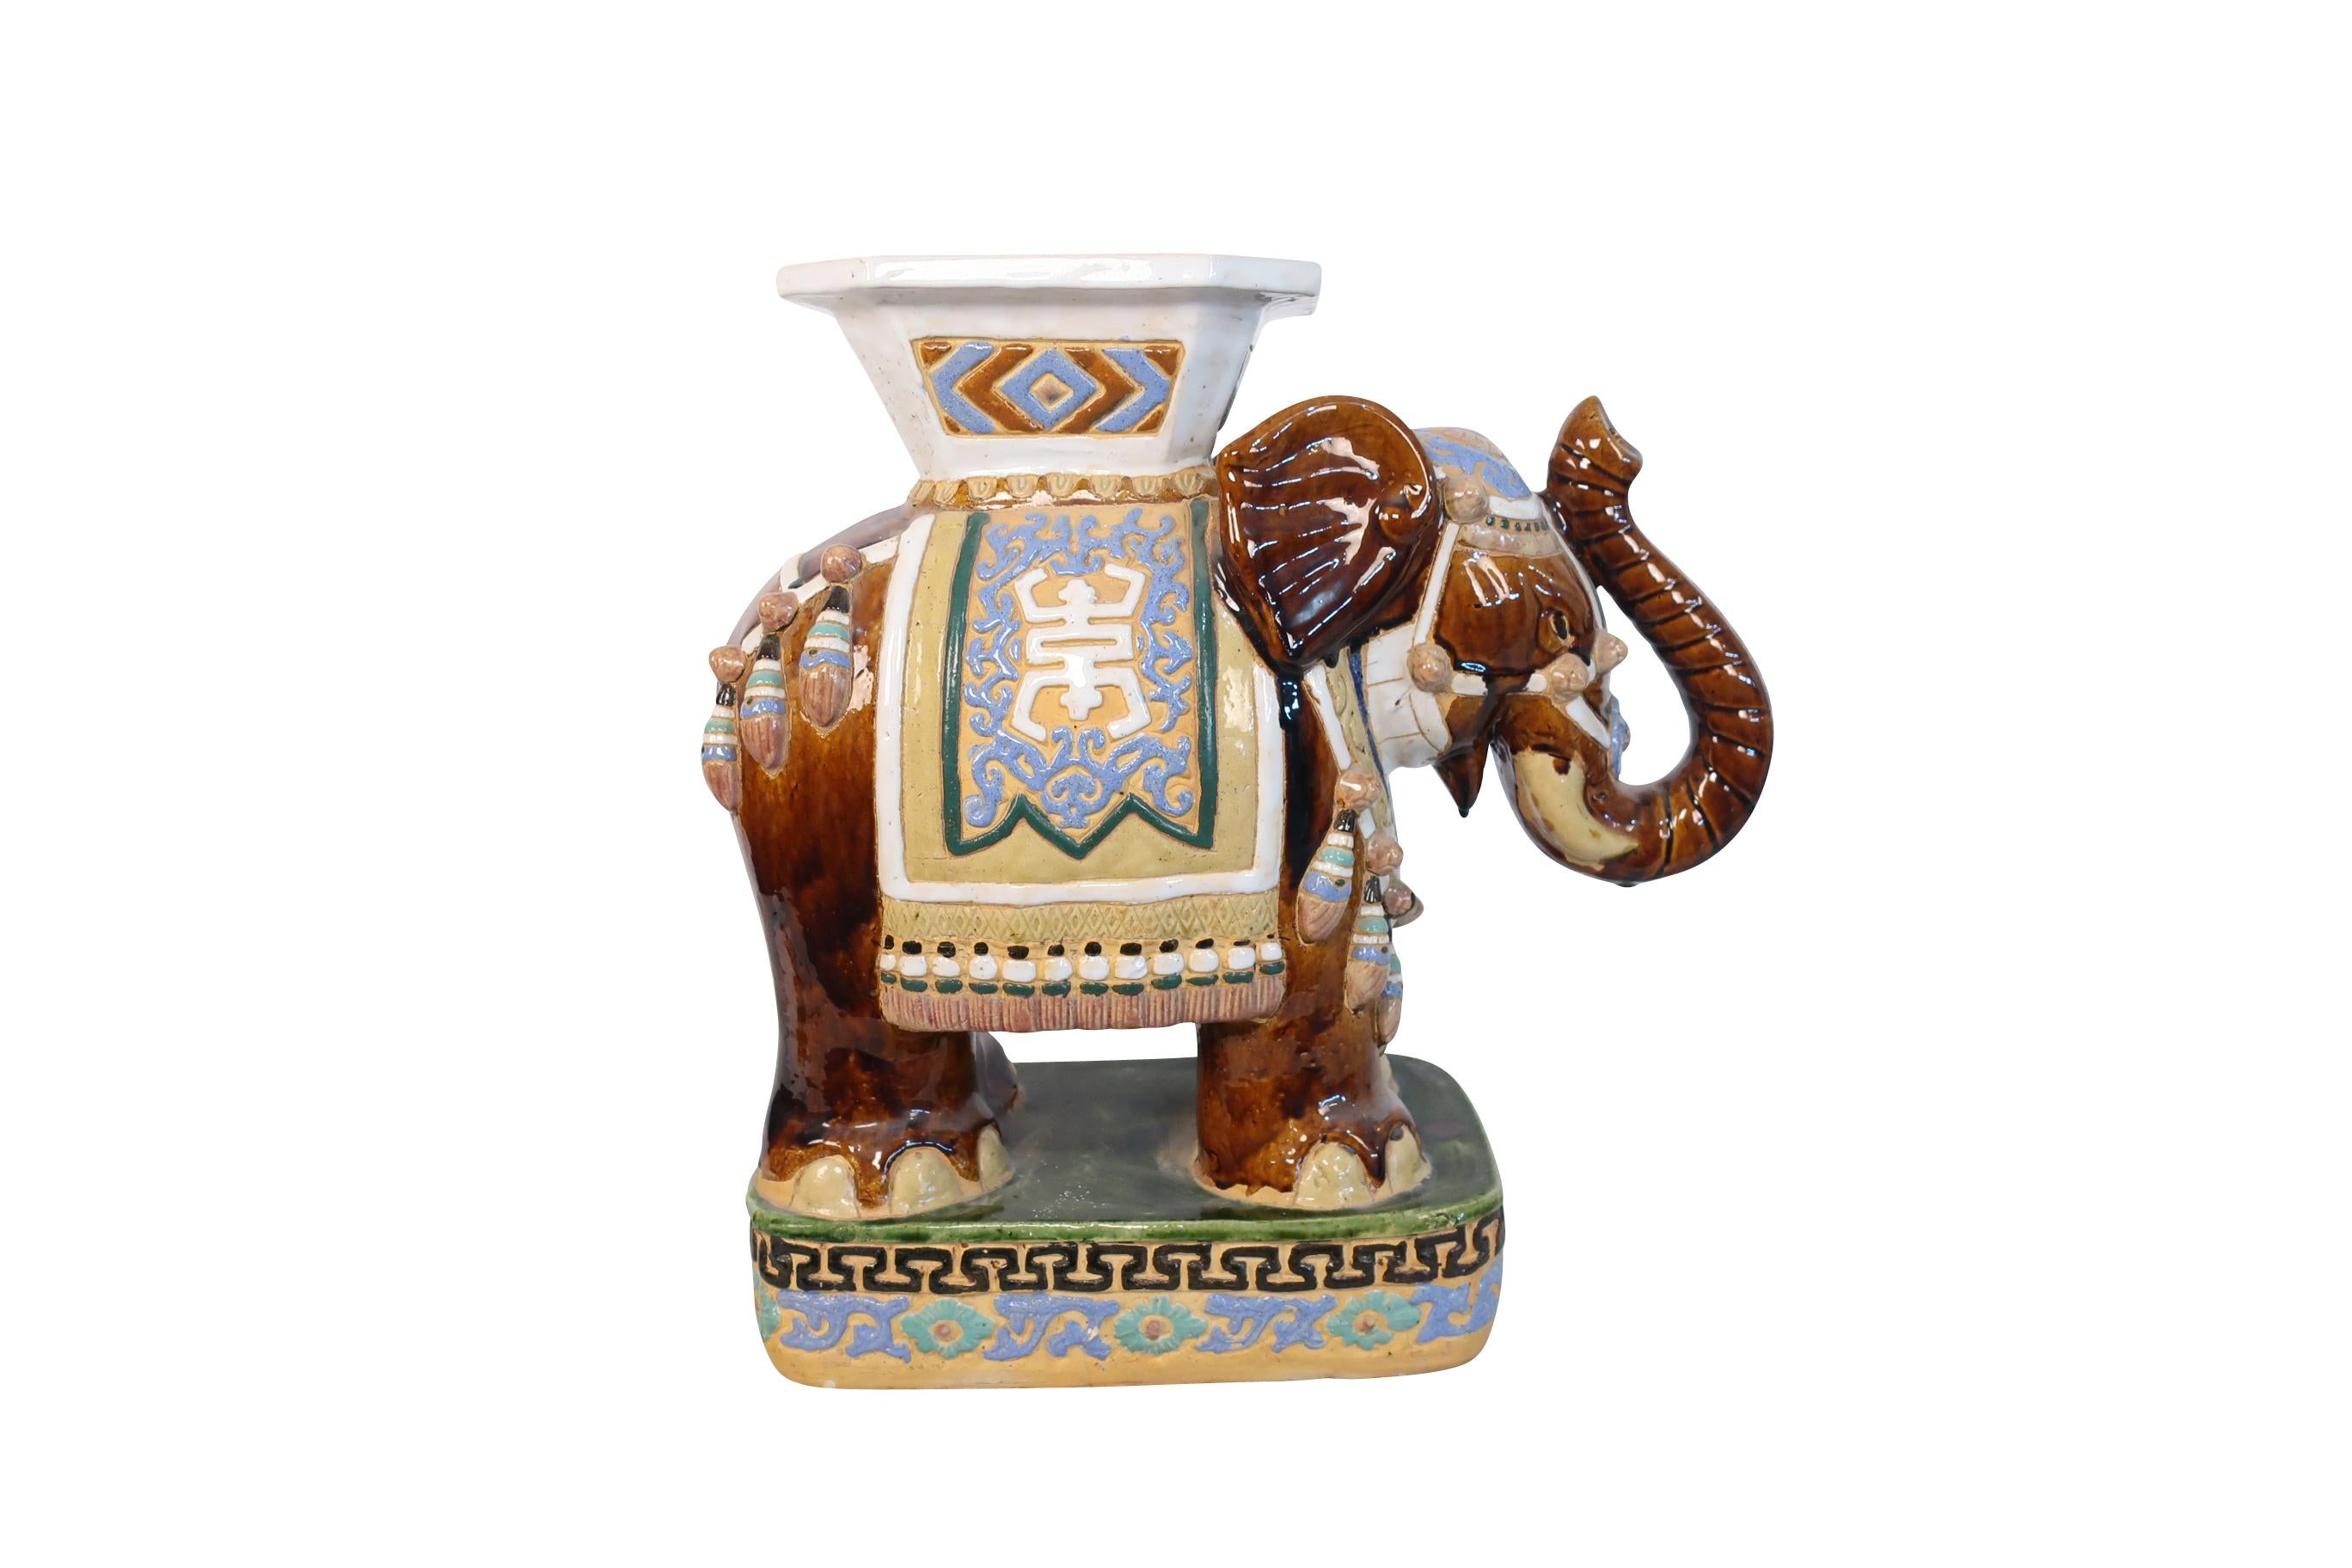 white ceramic elephant stool